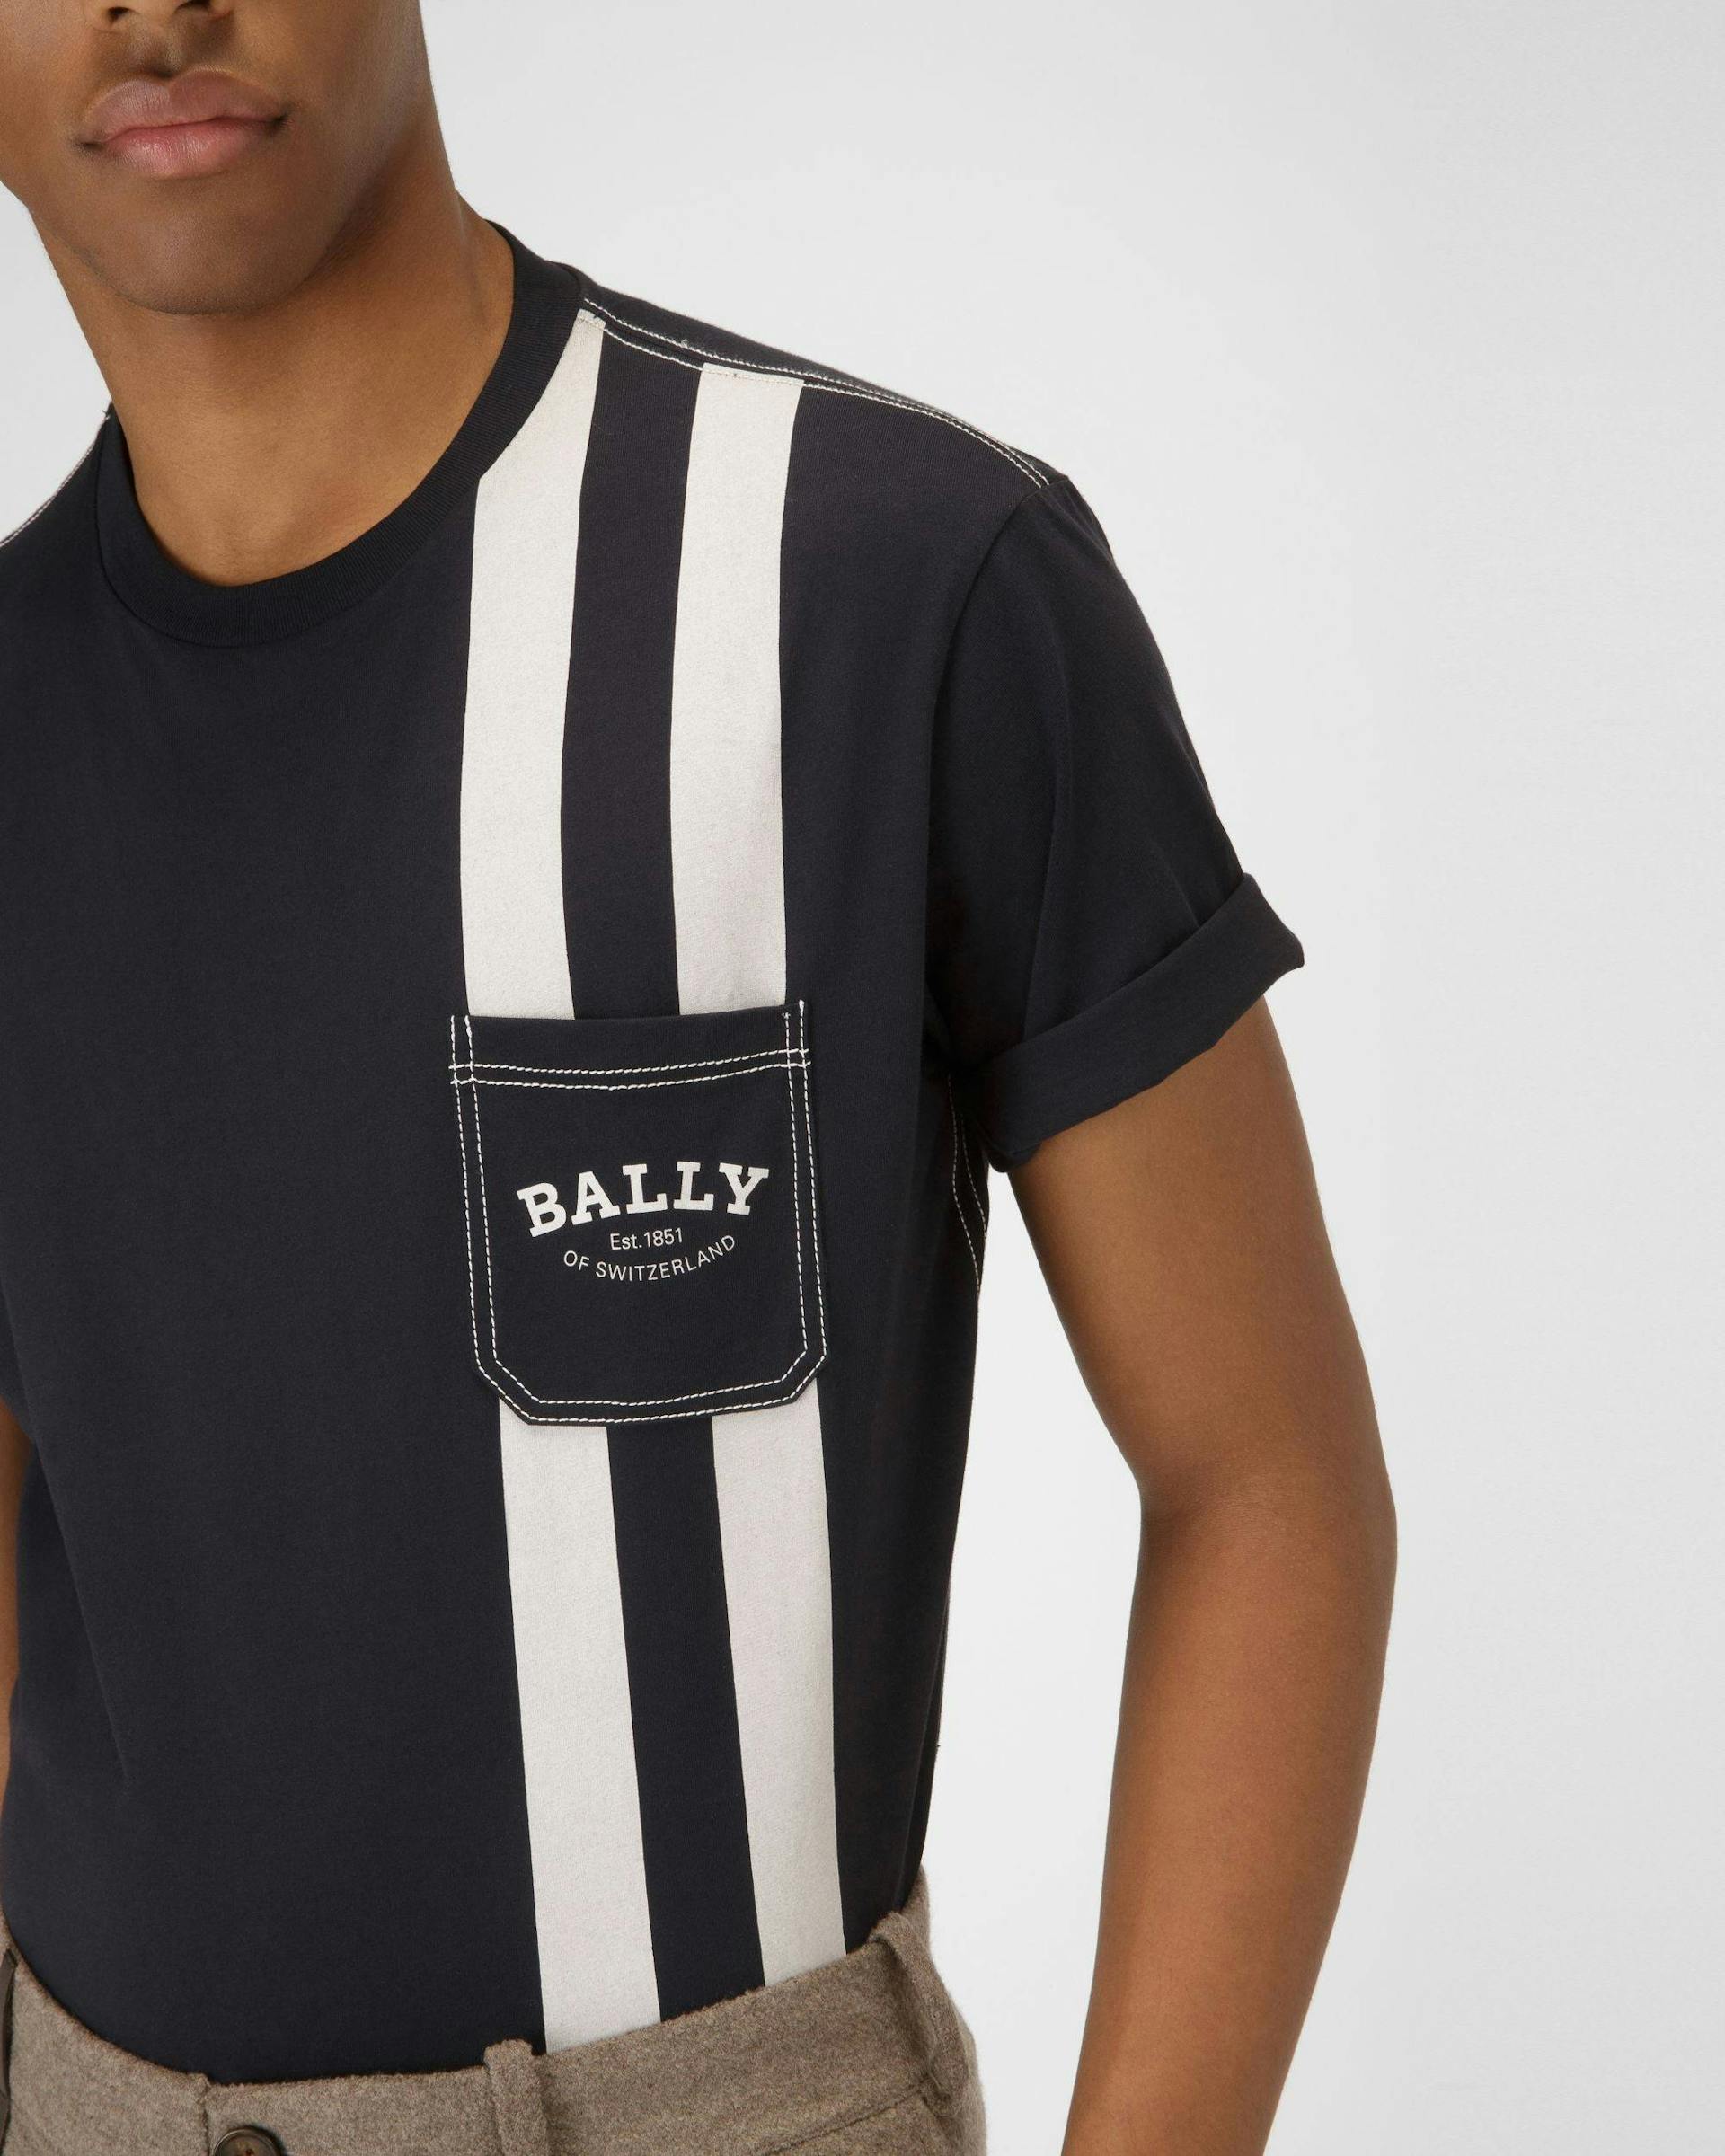 T-Shirt Con Bally Stripe In Cotone Colore Blu Navy - Uomo - Bally - 02